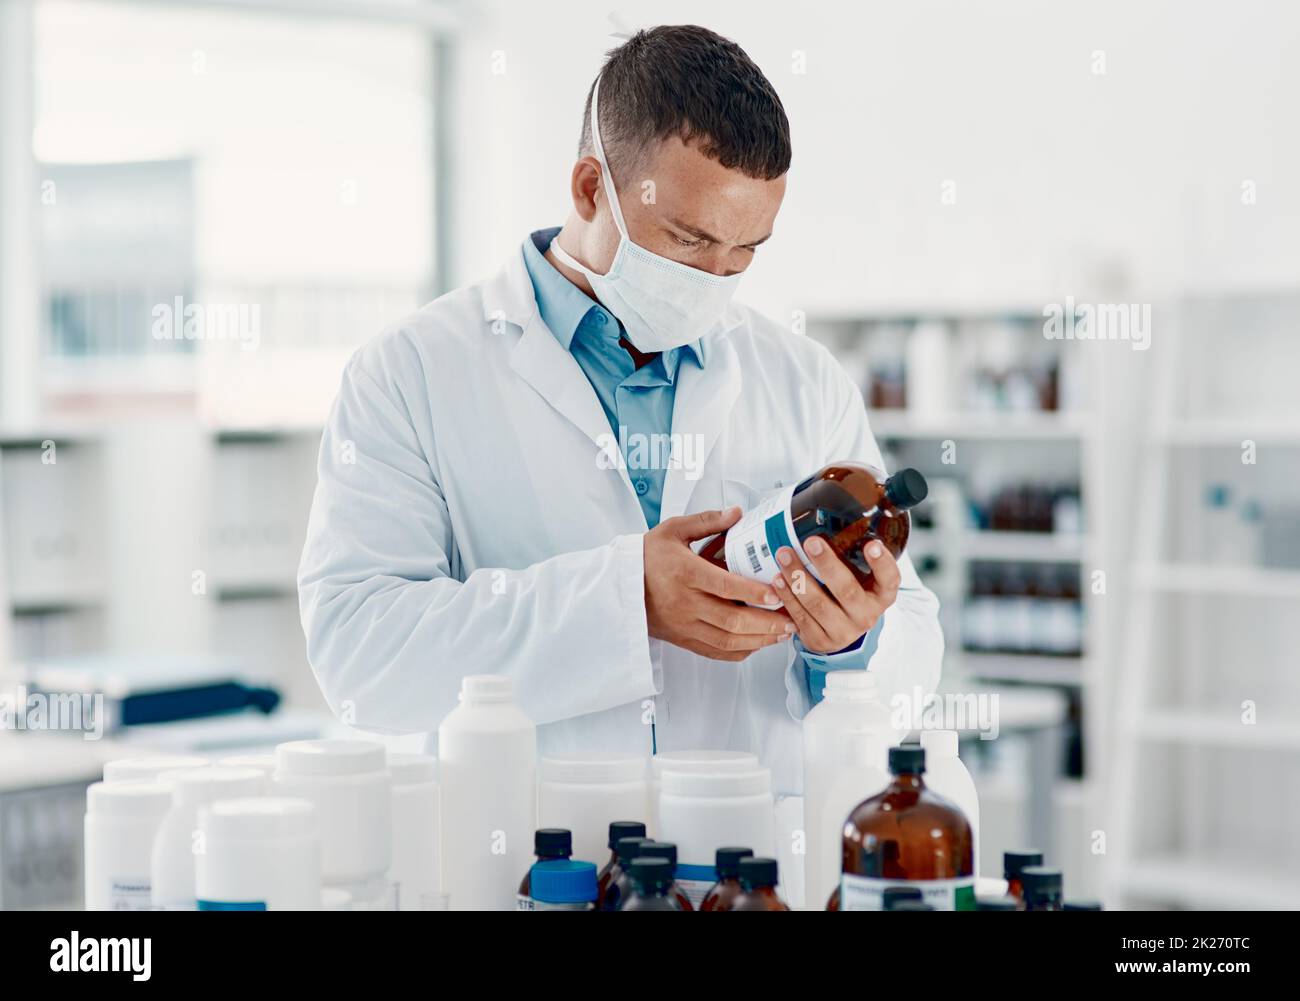 Démasquer le virus.Prise de vue d'un jeune scientifique analysant des médicaments dans un laboratoire. Banque D'Images